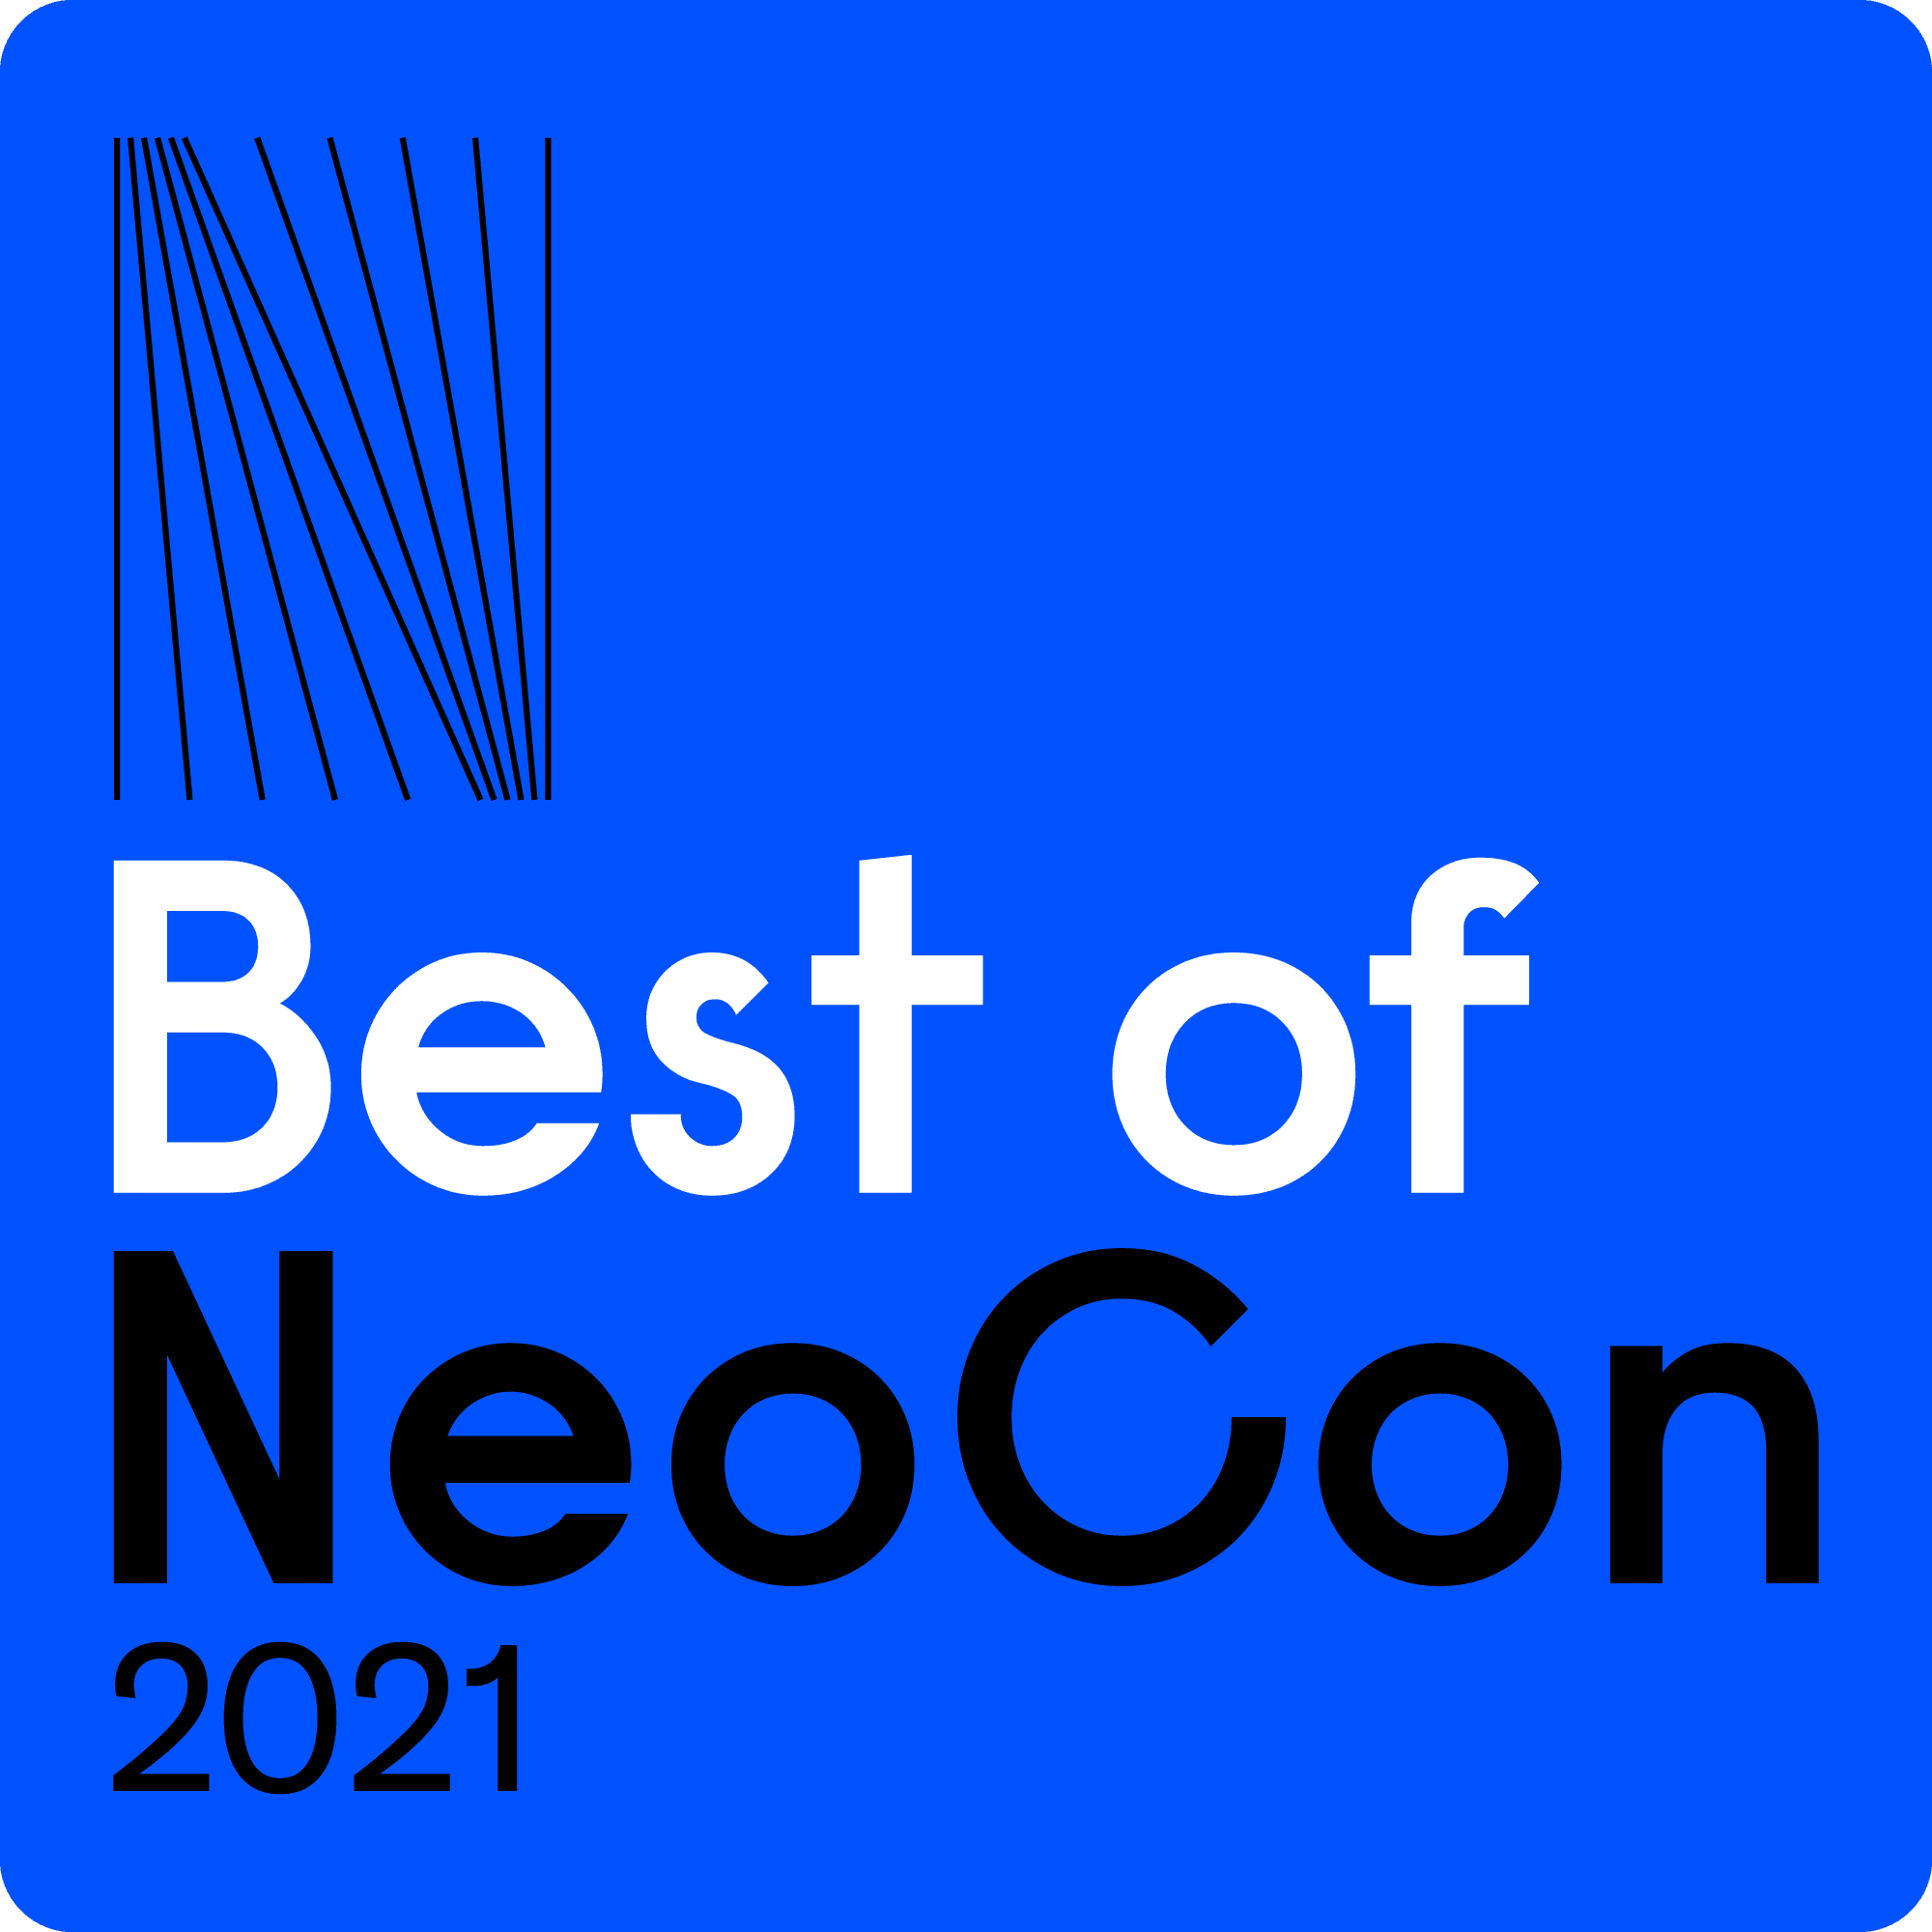 Best of neocon logo Blue